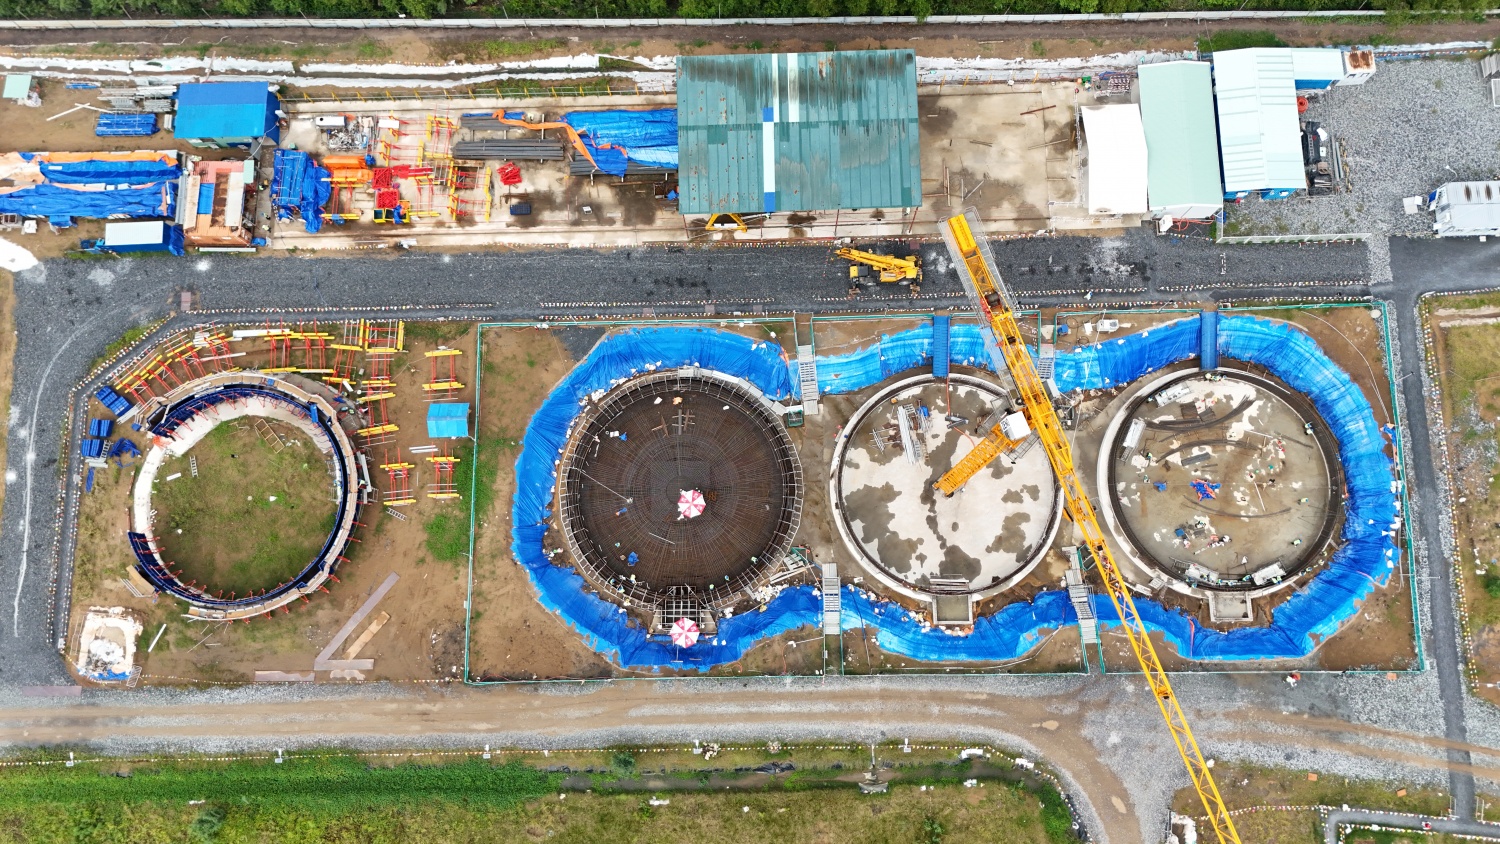 [Chùm ảnh] Cận cảnh nhà máy xử lý nước thải lớn nhất nước tại TP HCM